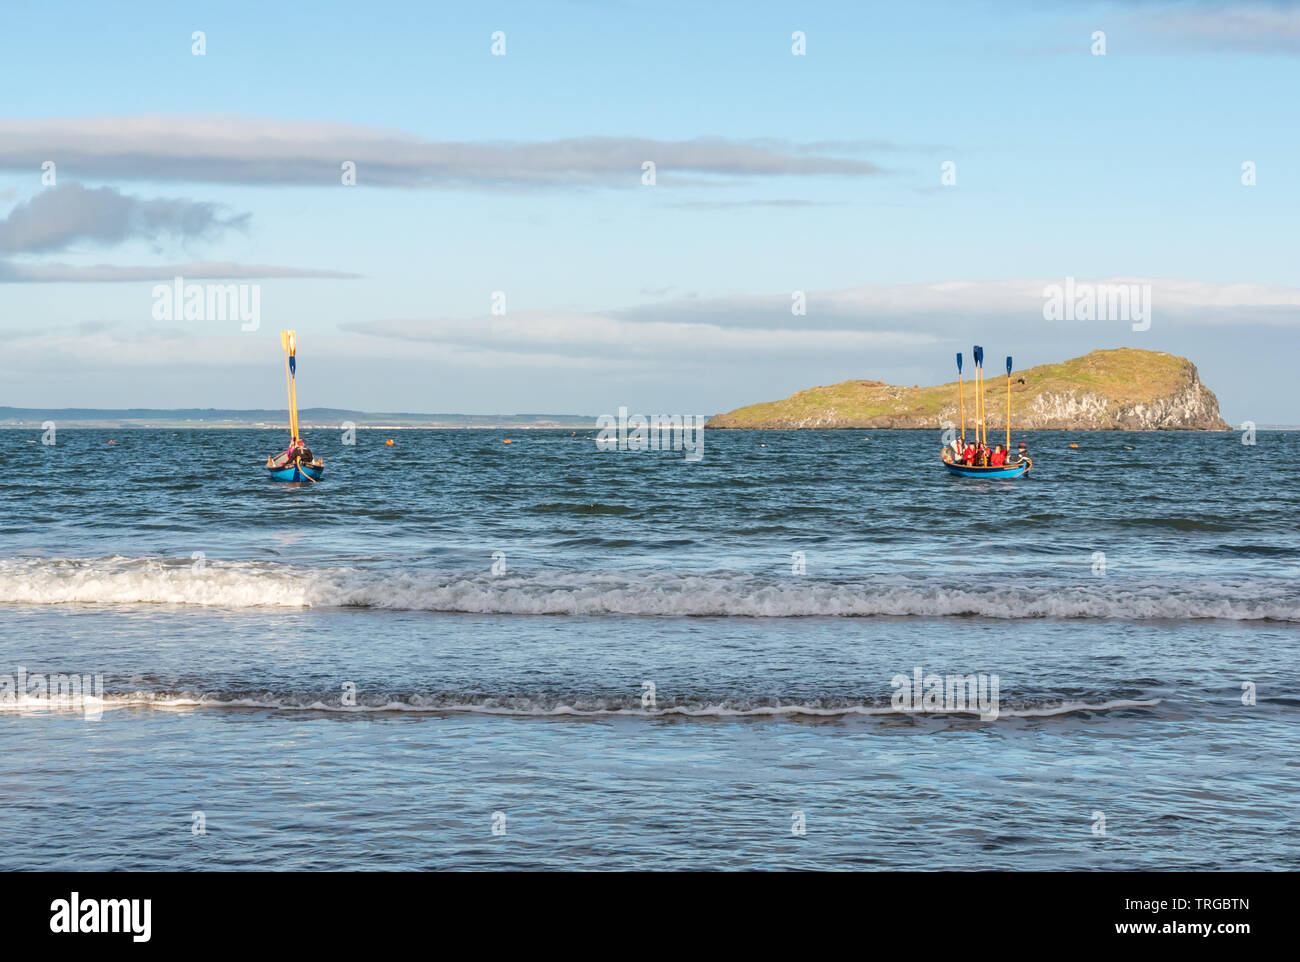 Loony Dook, Neujahr: West Bay, Firth-of-Forth, North Berwick, East Lothian, Schottland, Großbritannien. Rudern skiffs Patrol Begrenzung der Schwimmbereich Stockfoto